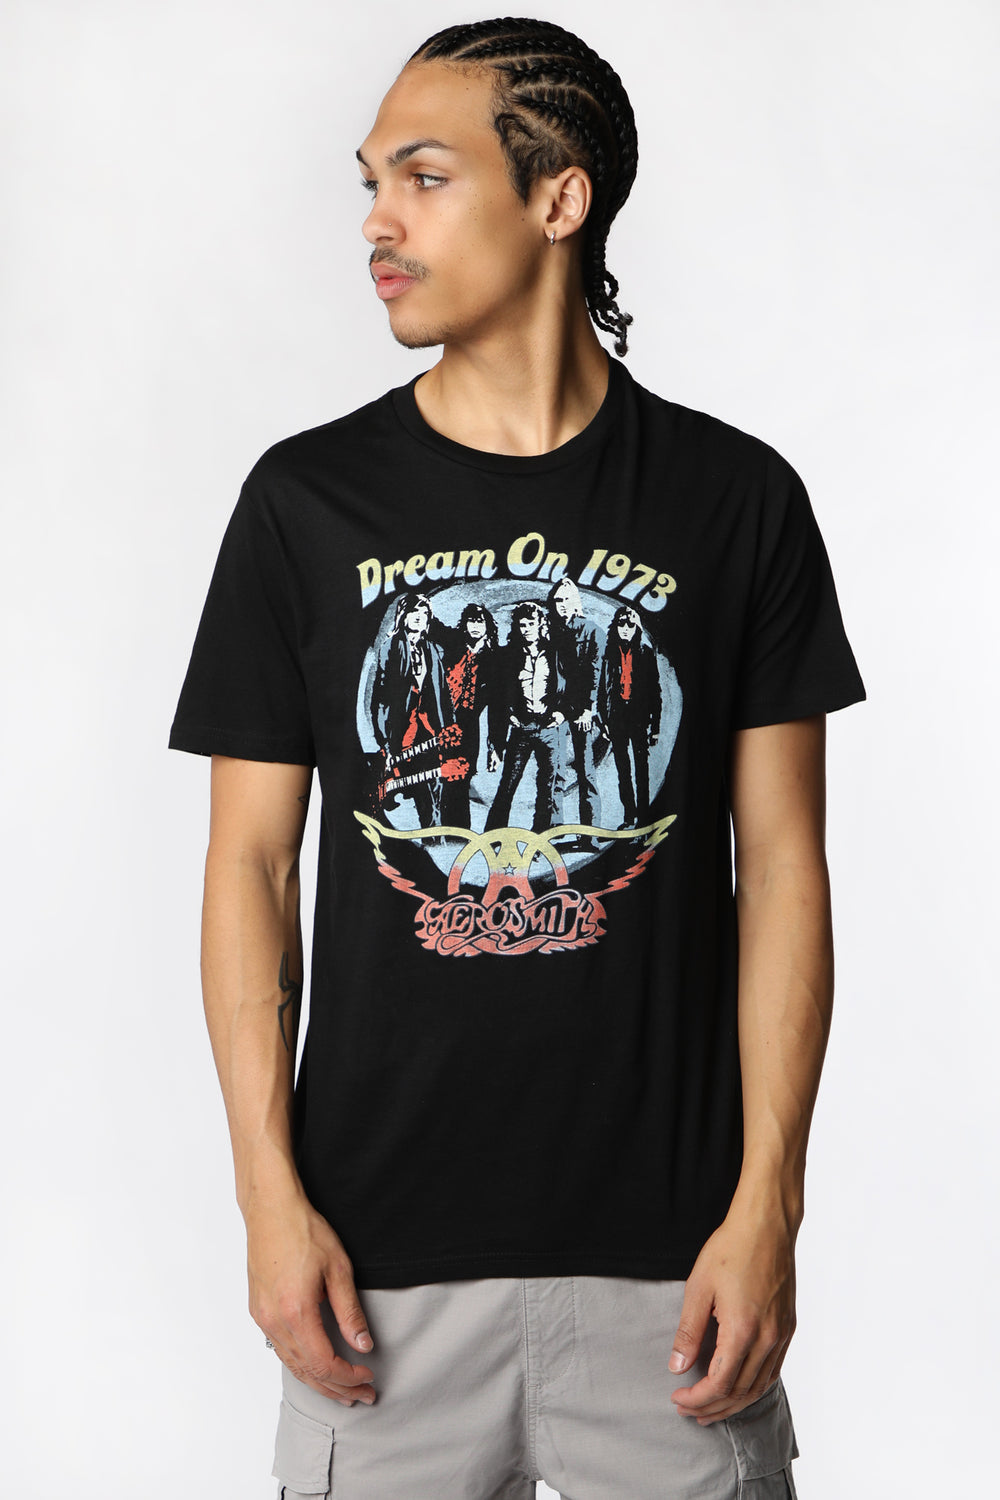 T-Shirt Imprimé Aerosmith Dream On Homme T-Shirt Imprimé Aerosmith Dream On Homme